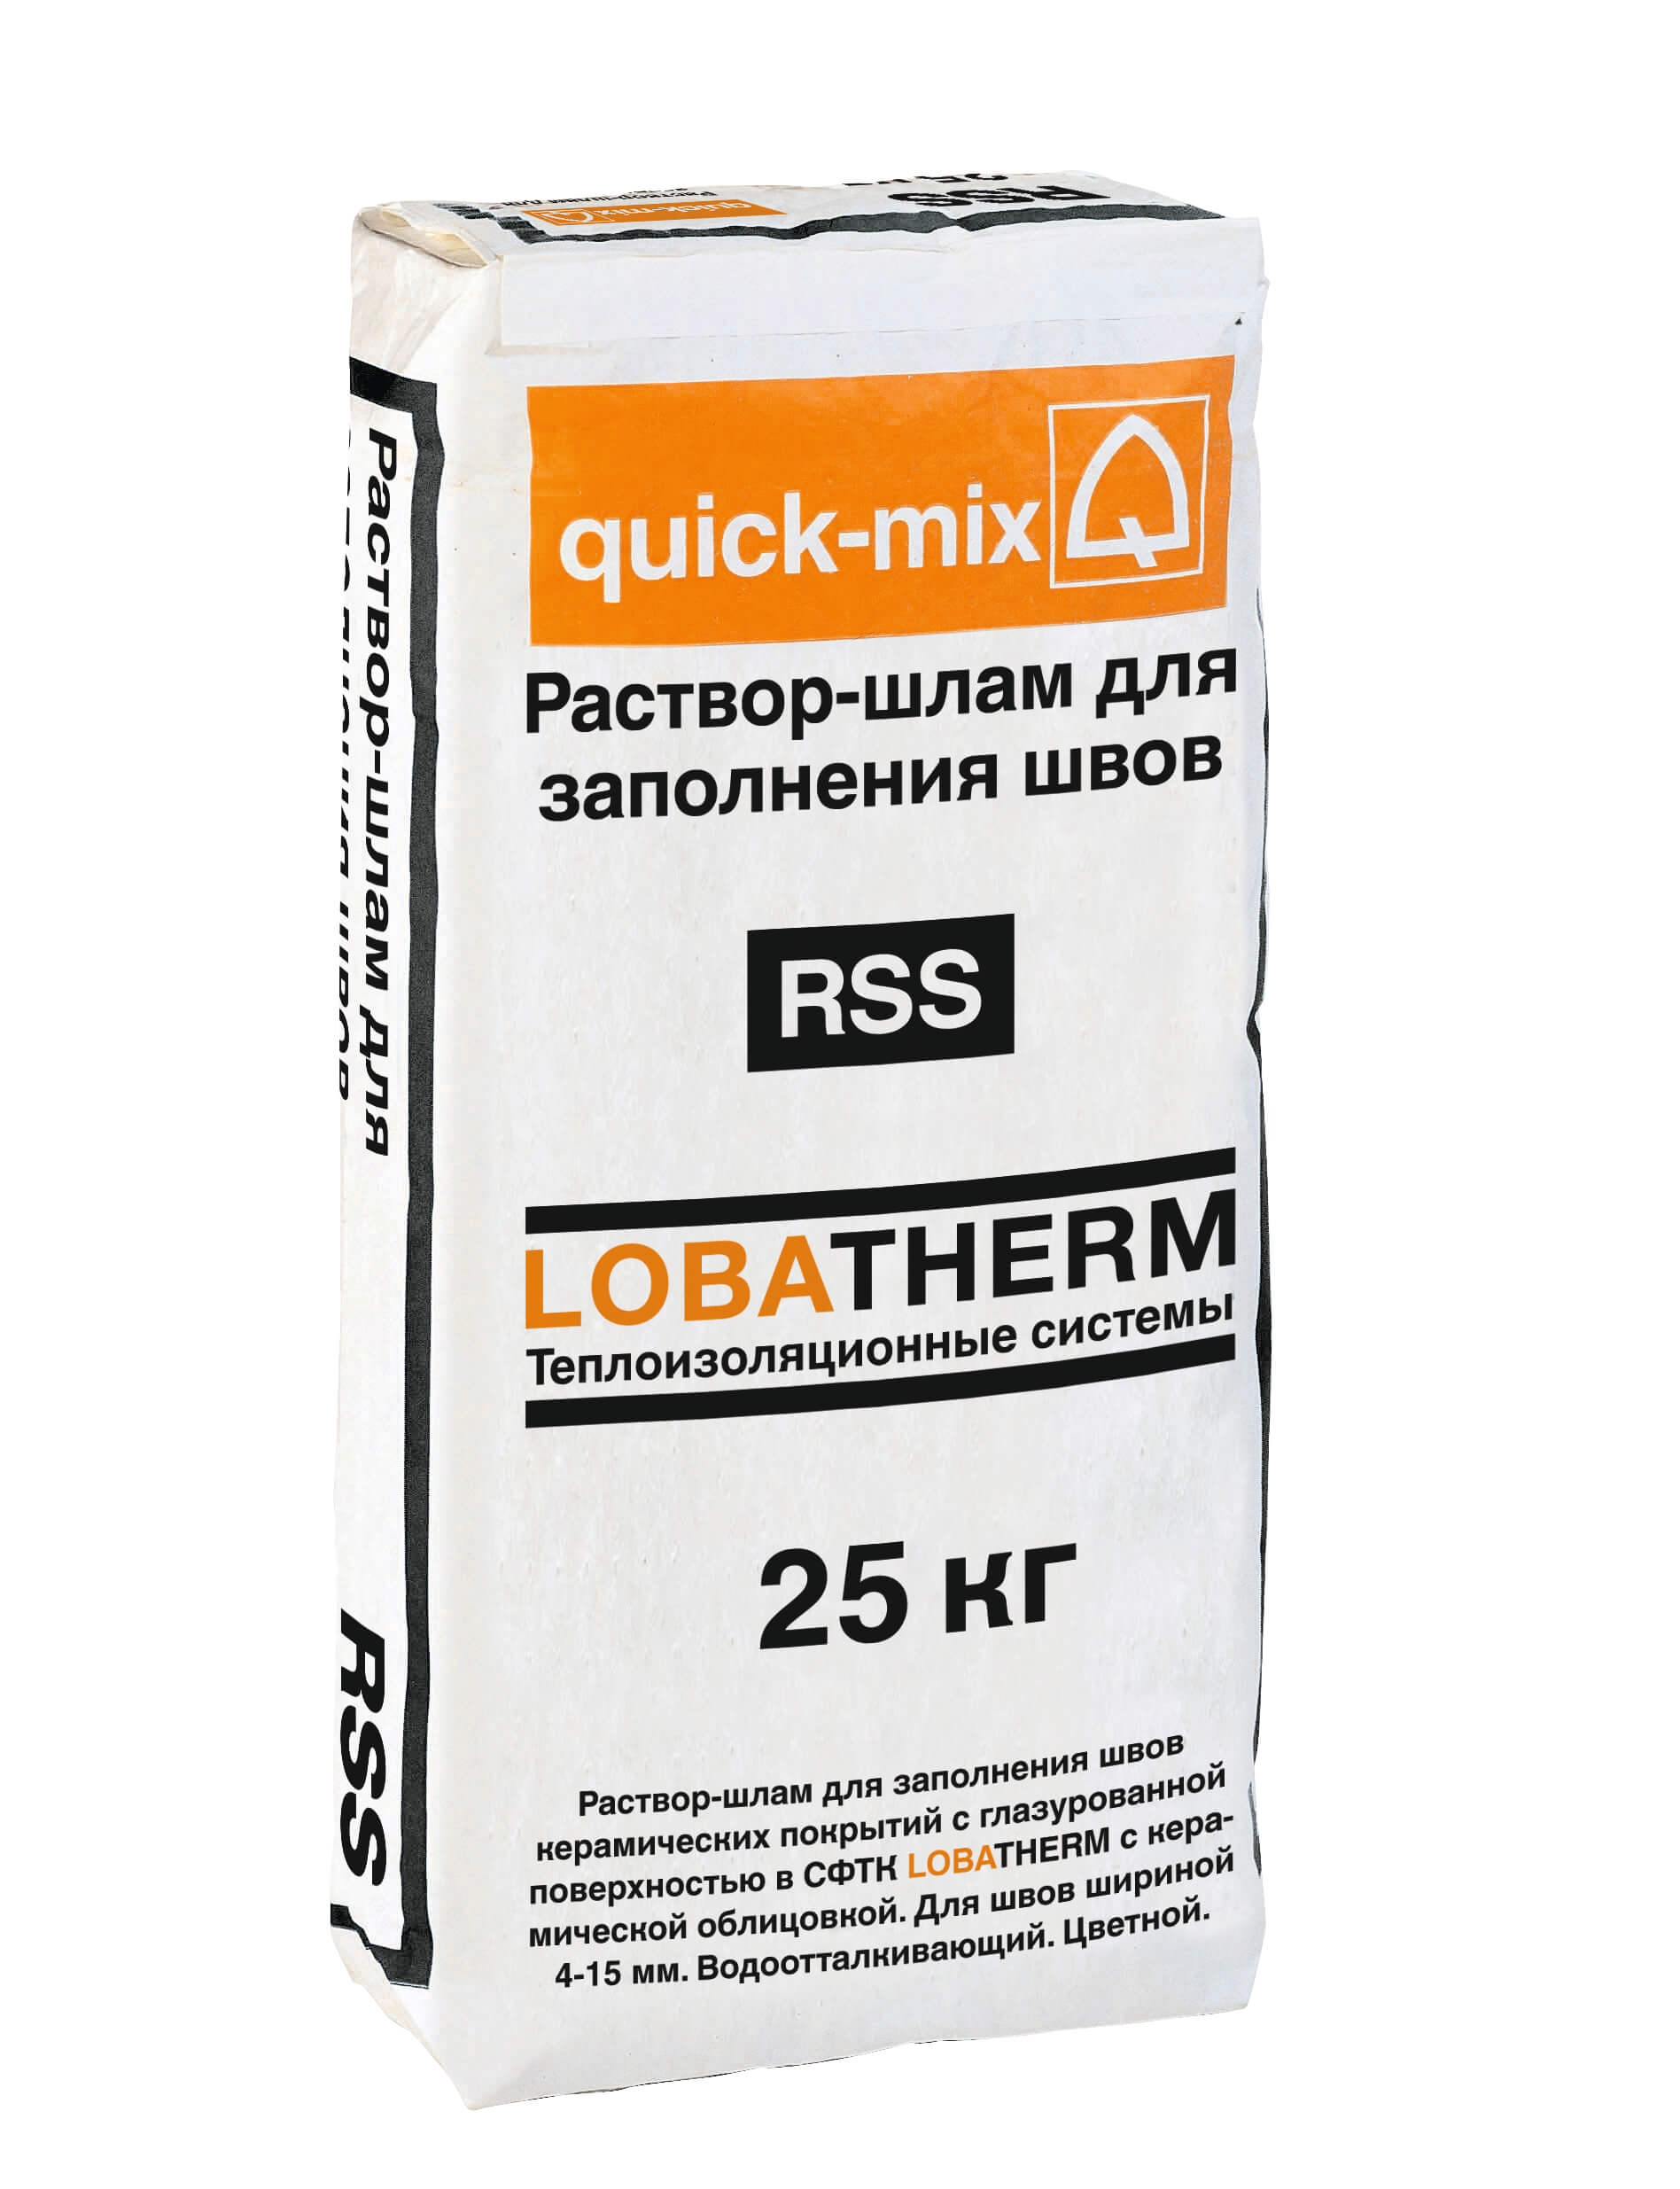 Цветной шовный раствор-шлам для заполнения швов керамических покрытий RSS  в СФТК "LOBATHERM" (бежево-белый)